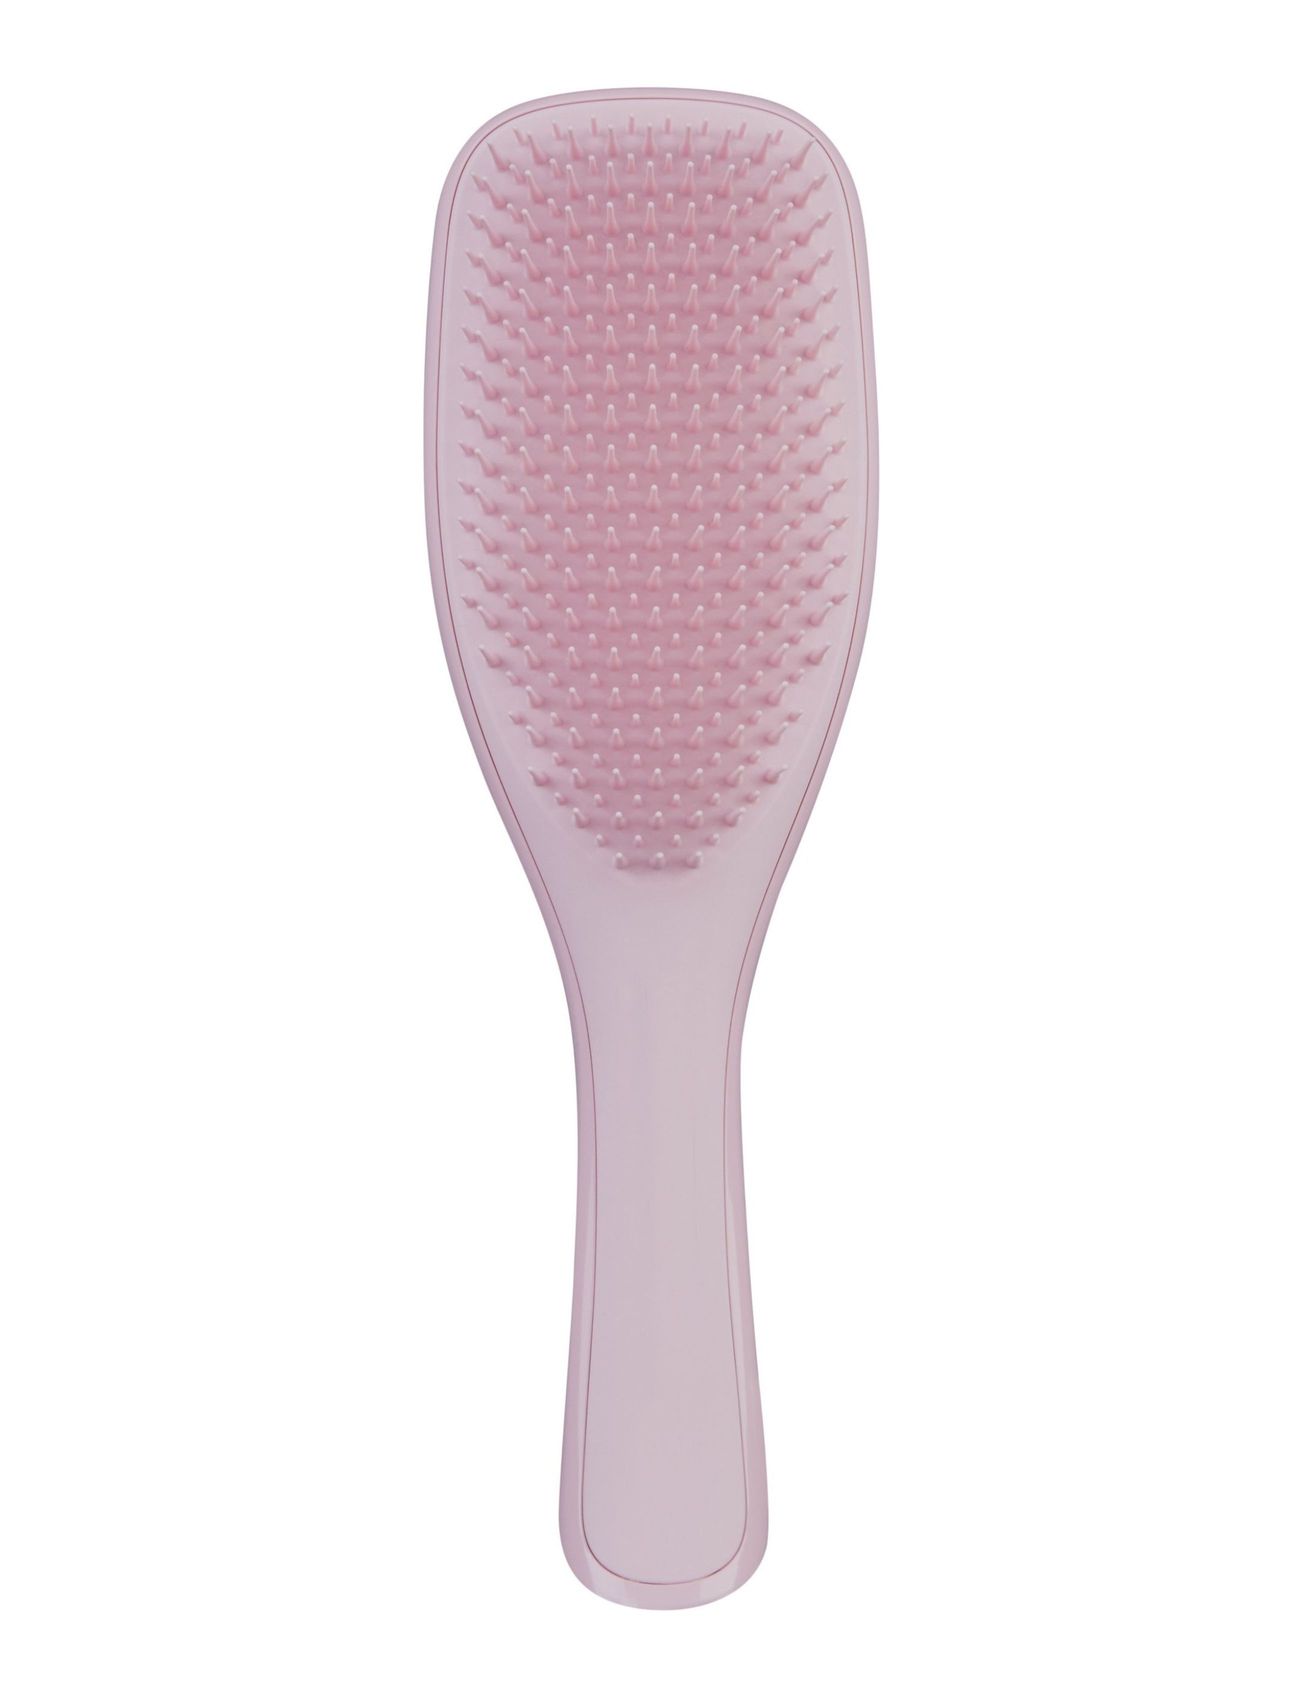 Tangle Teezer Wet Detangler Millennial Pink Beauty Women Hair Hair Brushes & Combs Detangling Brush Pink Tangle Teezer